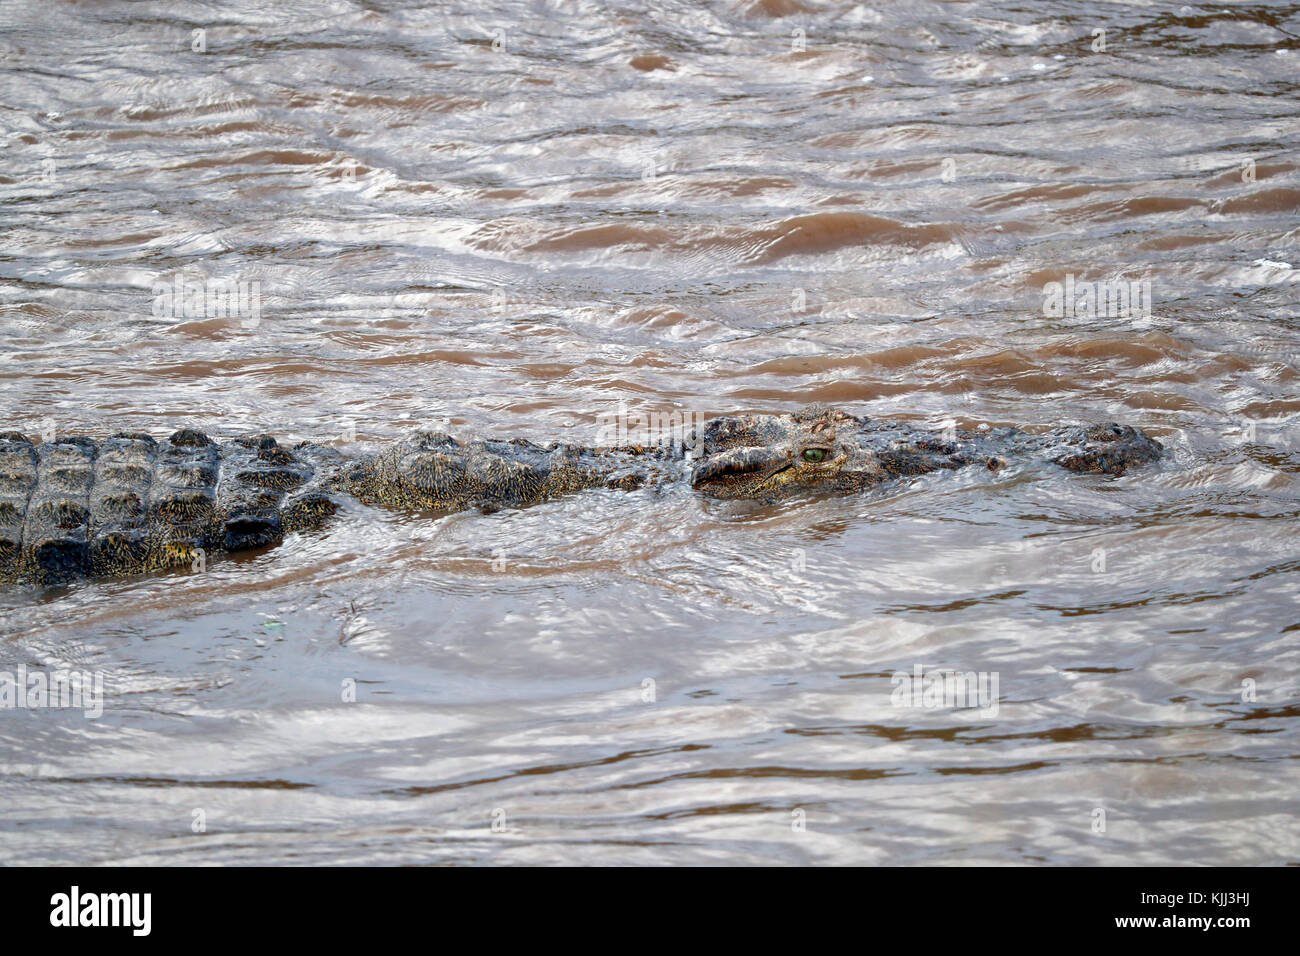 Coccodrillo del Nilo (Crocodylus niloticus) in acqua. Masai Mara Game Reserve. Kenya. Foto Stock